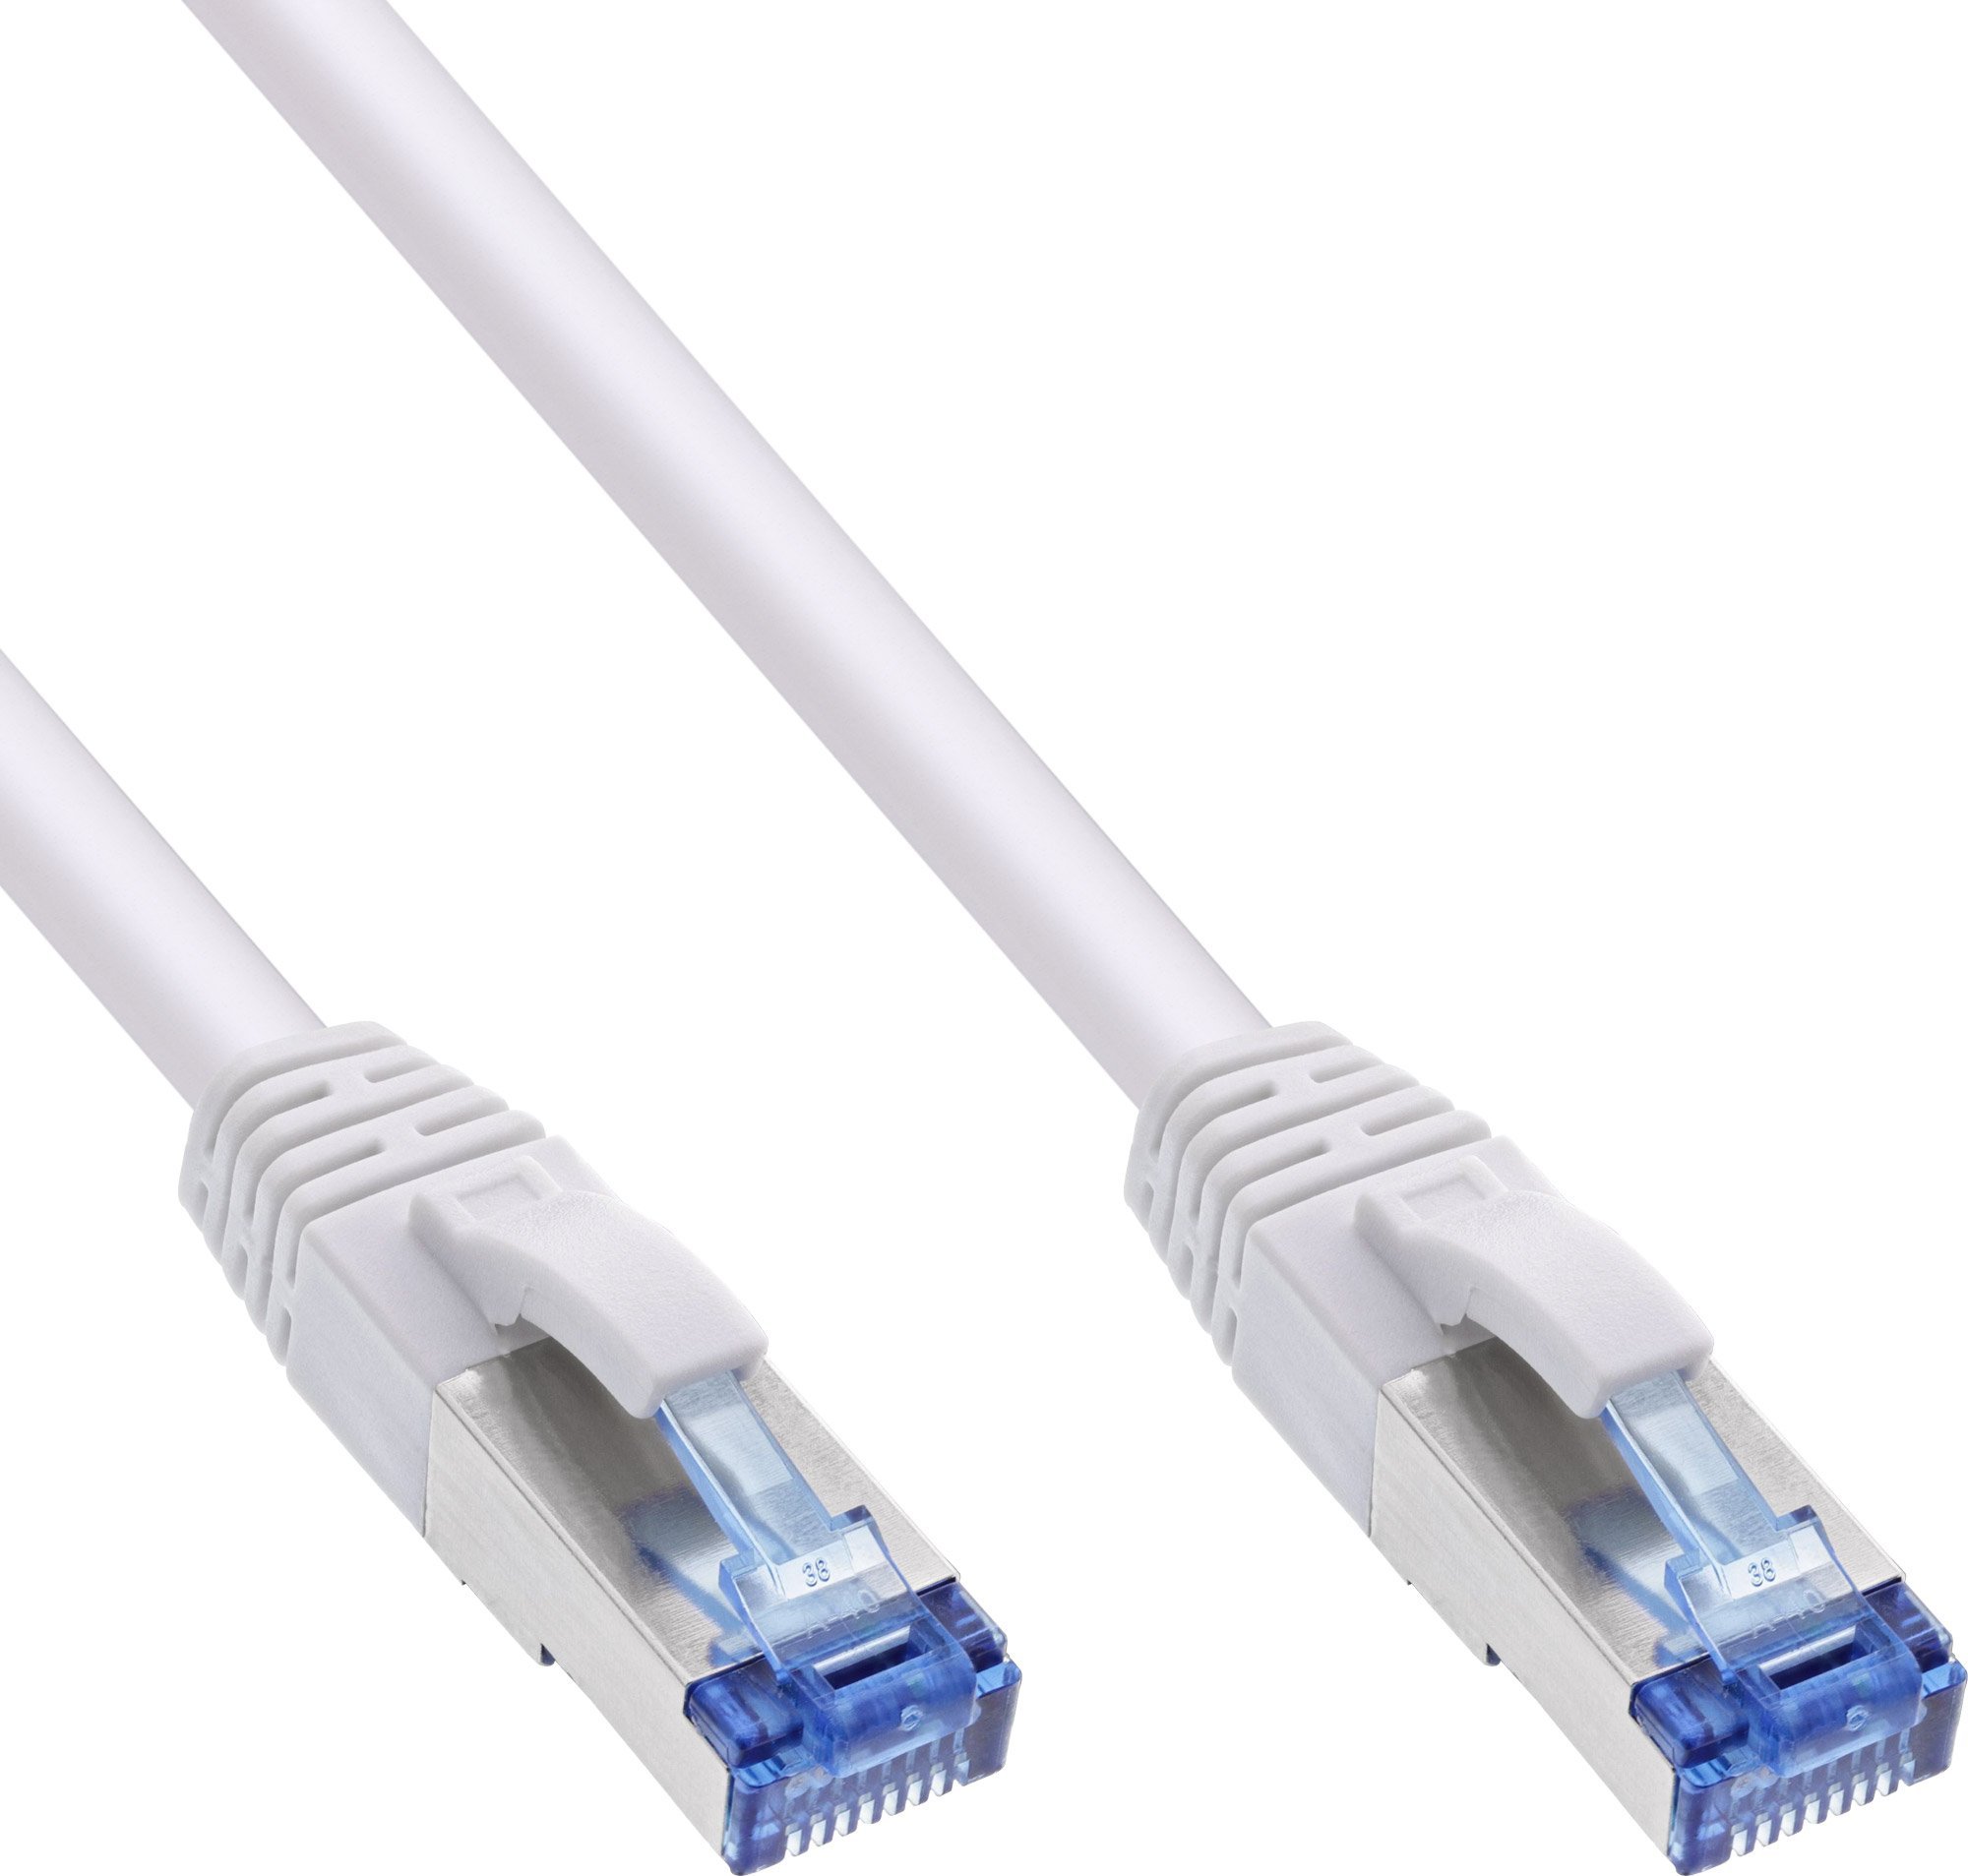 Zdjęcia - Kabel InLine 70pcs. Bulk-Pack ® Patch Cable S/FTP PiMF Cat.6A halogen free 